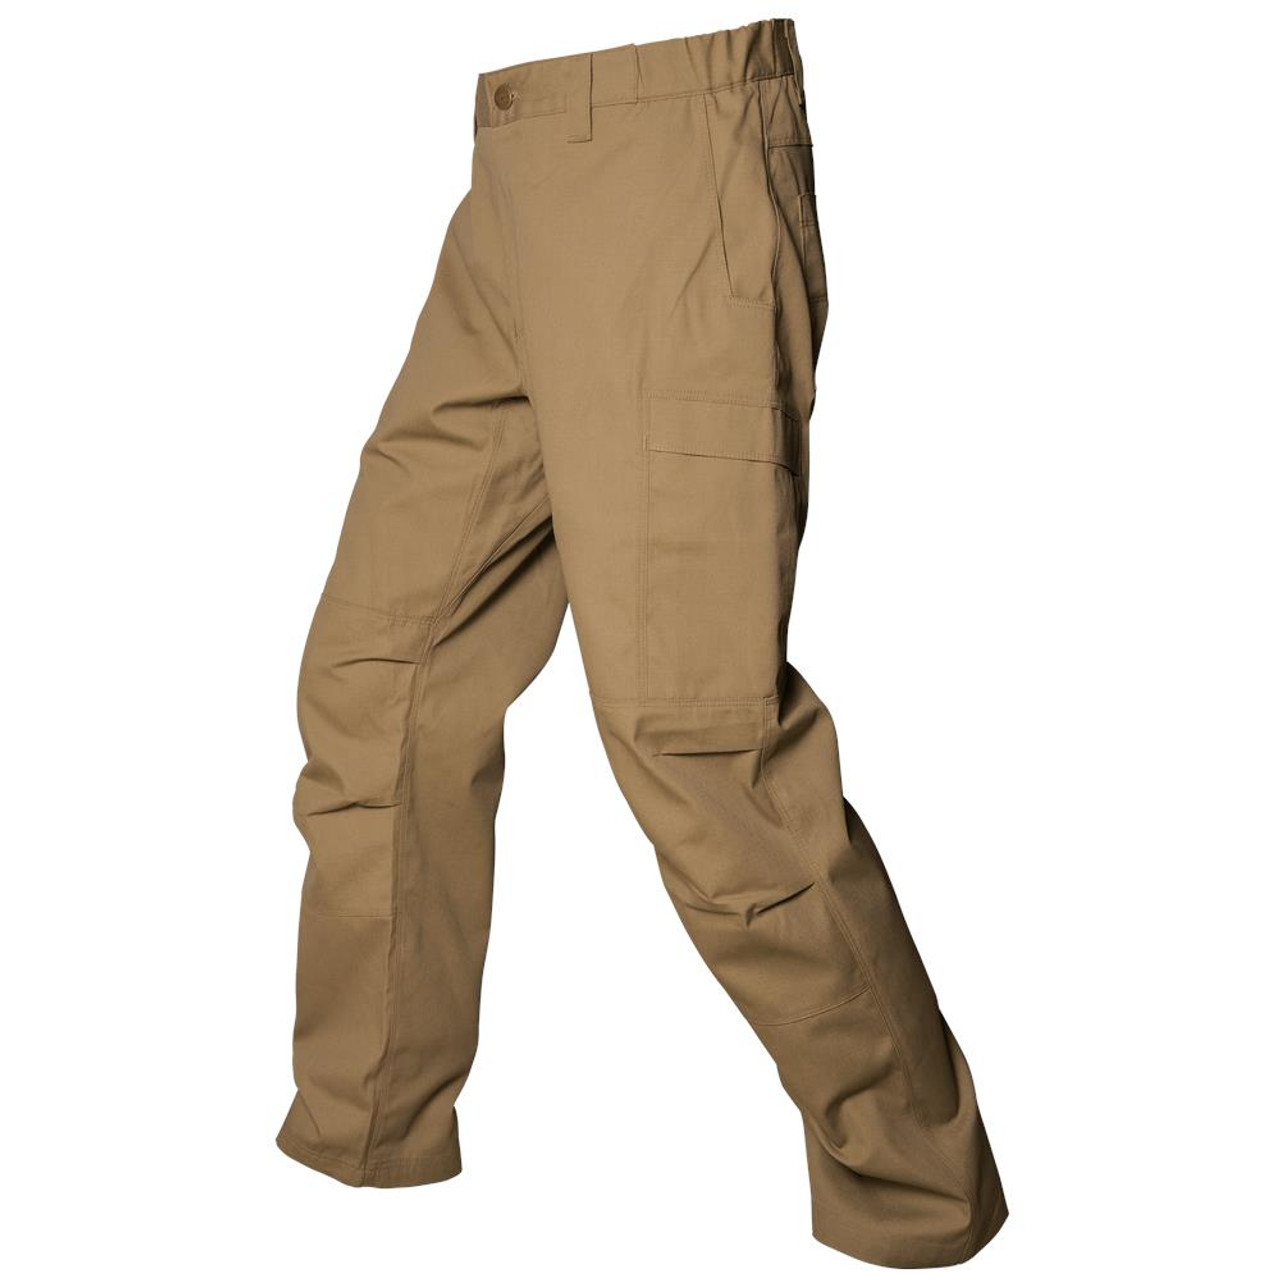 Vertx Men's Phantom Lightweight 2.0 Tactical Desert Tan Pants